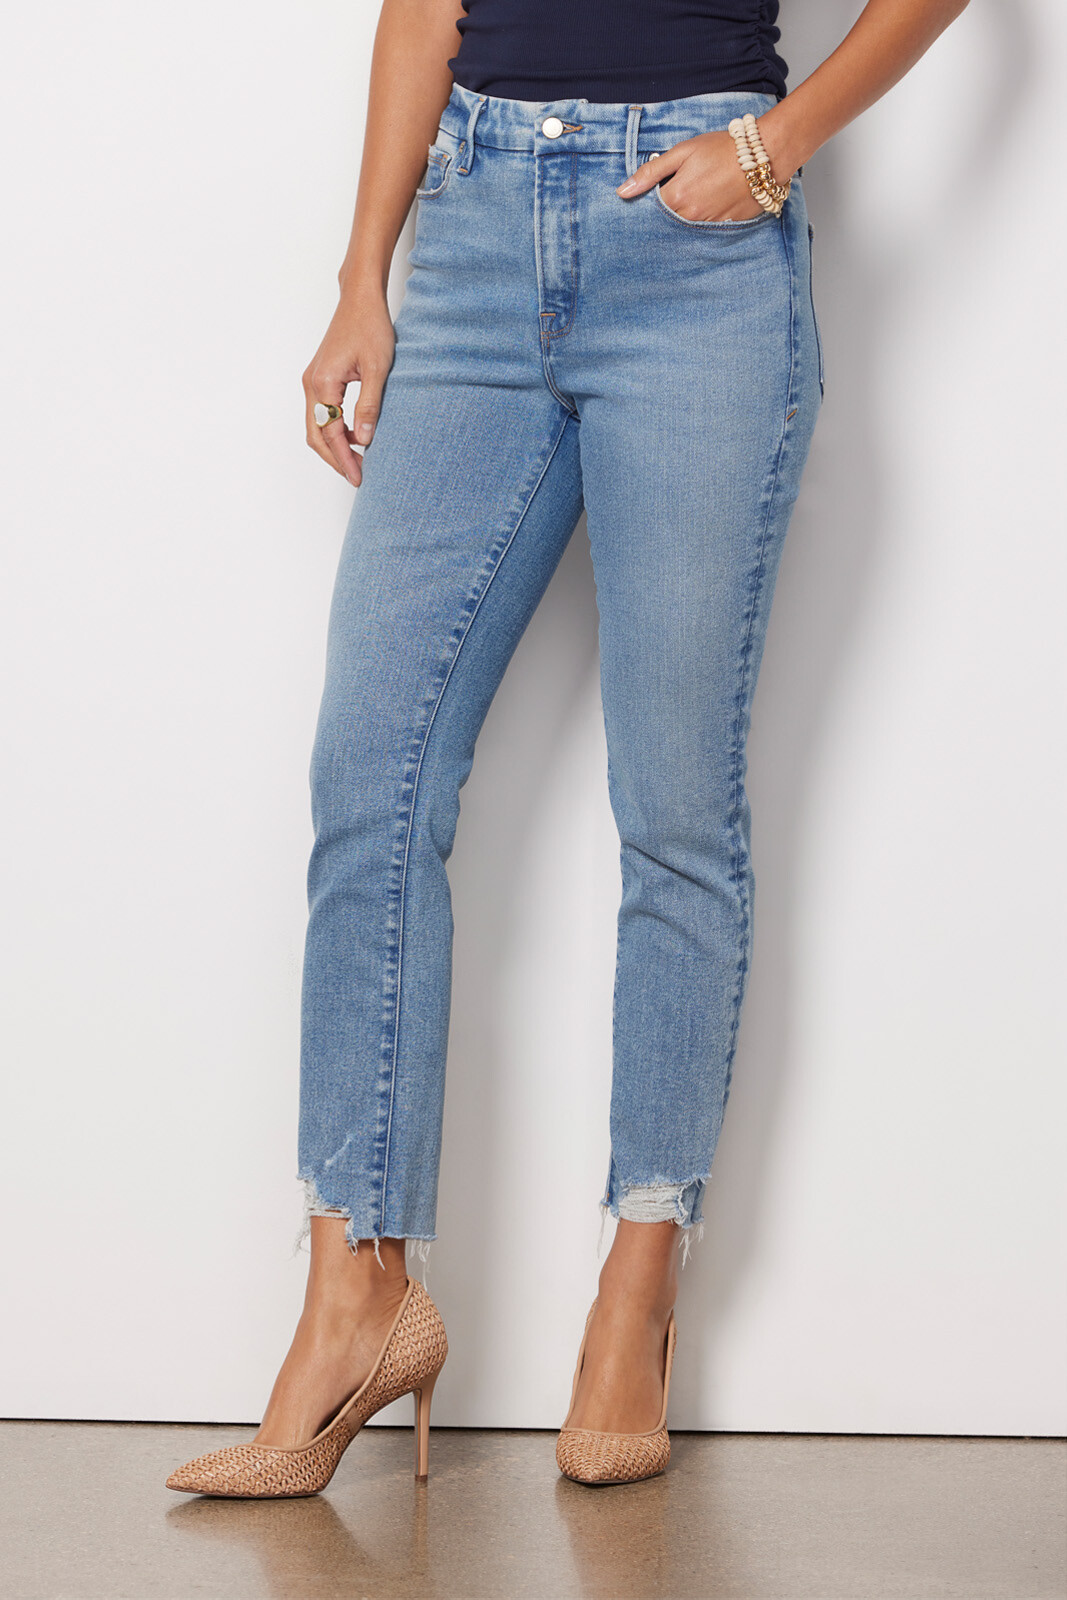 GOOD AMERICAN Women's Good Legs Denim Jeans in Blue 004 Size 6/28